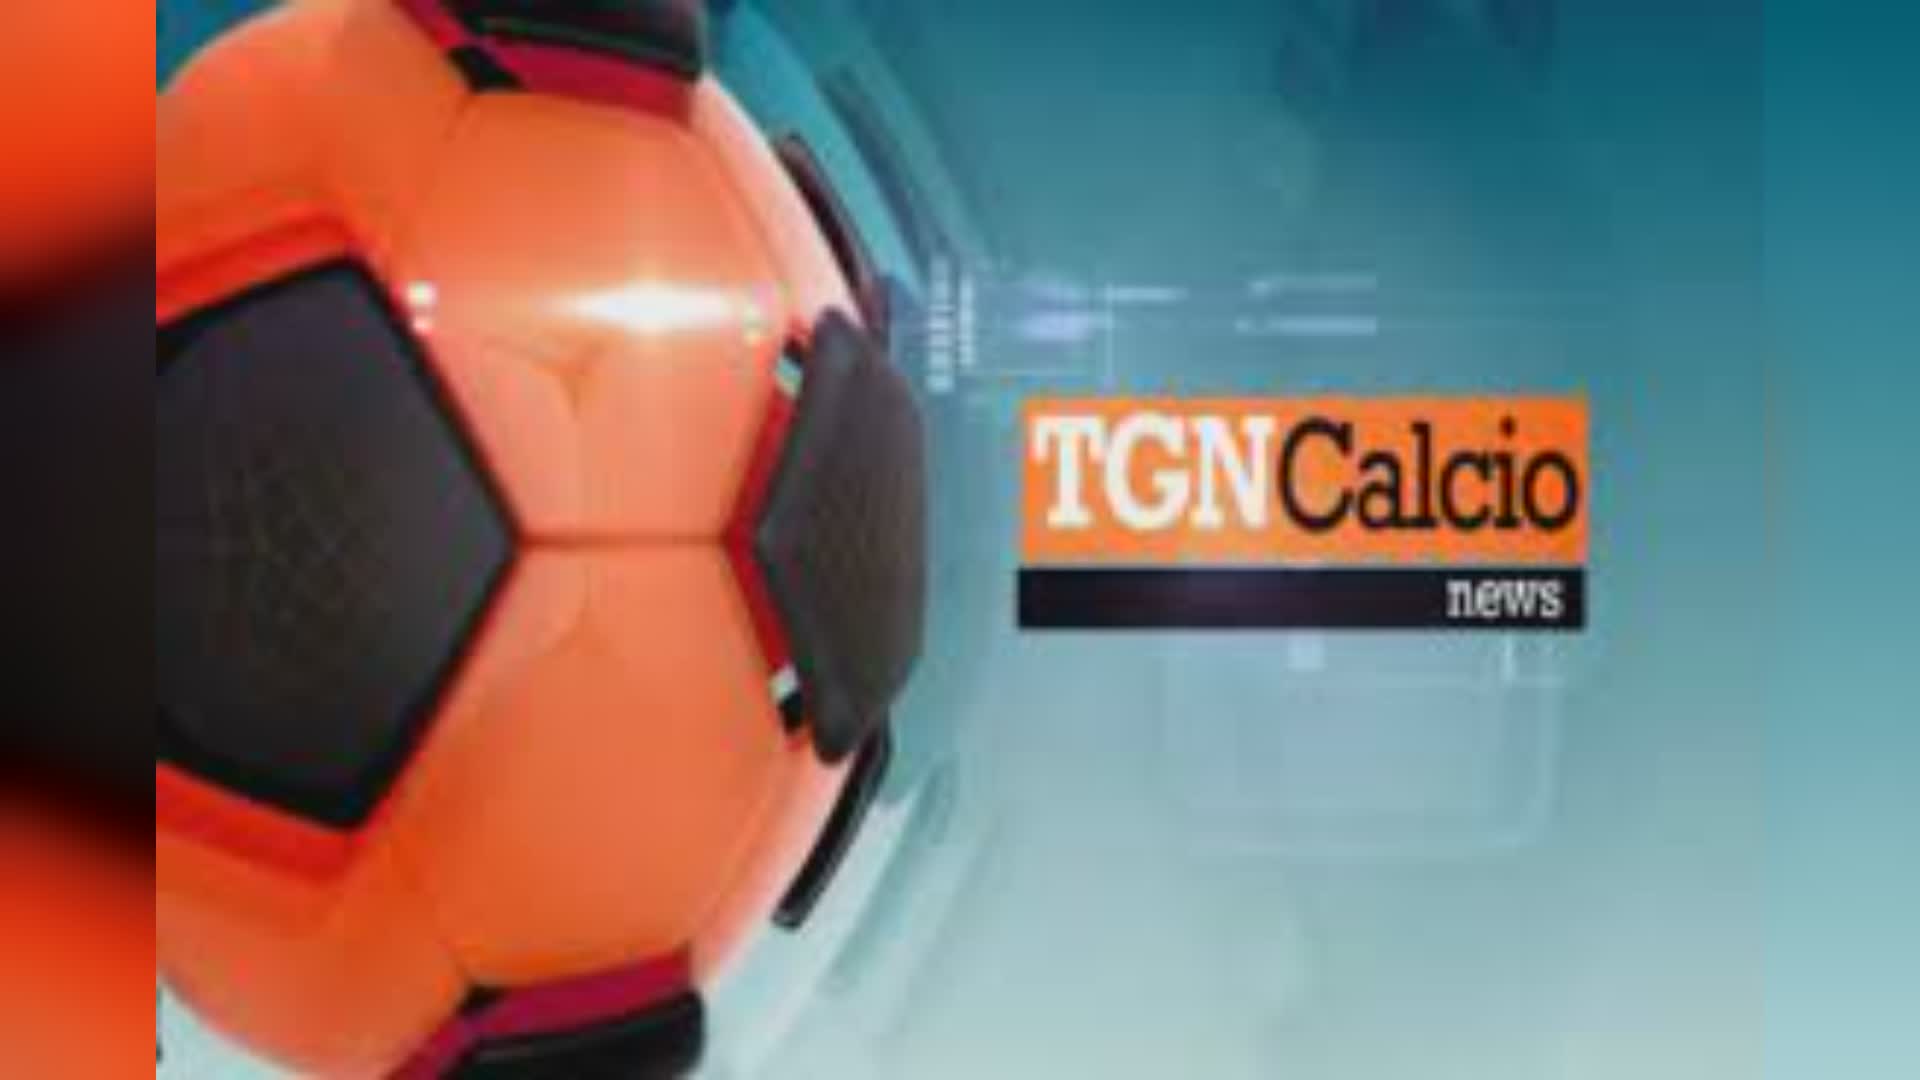 Genoa e Sampdoria, gli highlights delle partite di serie A e B in onda su Telenord